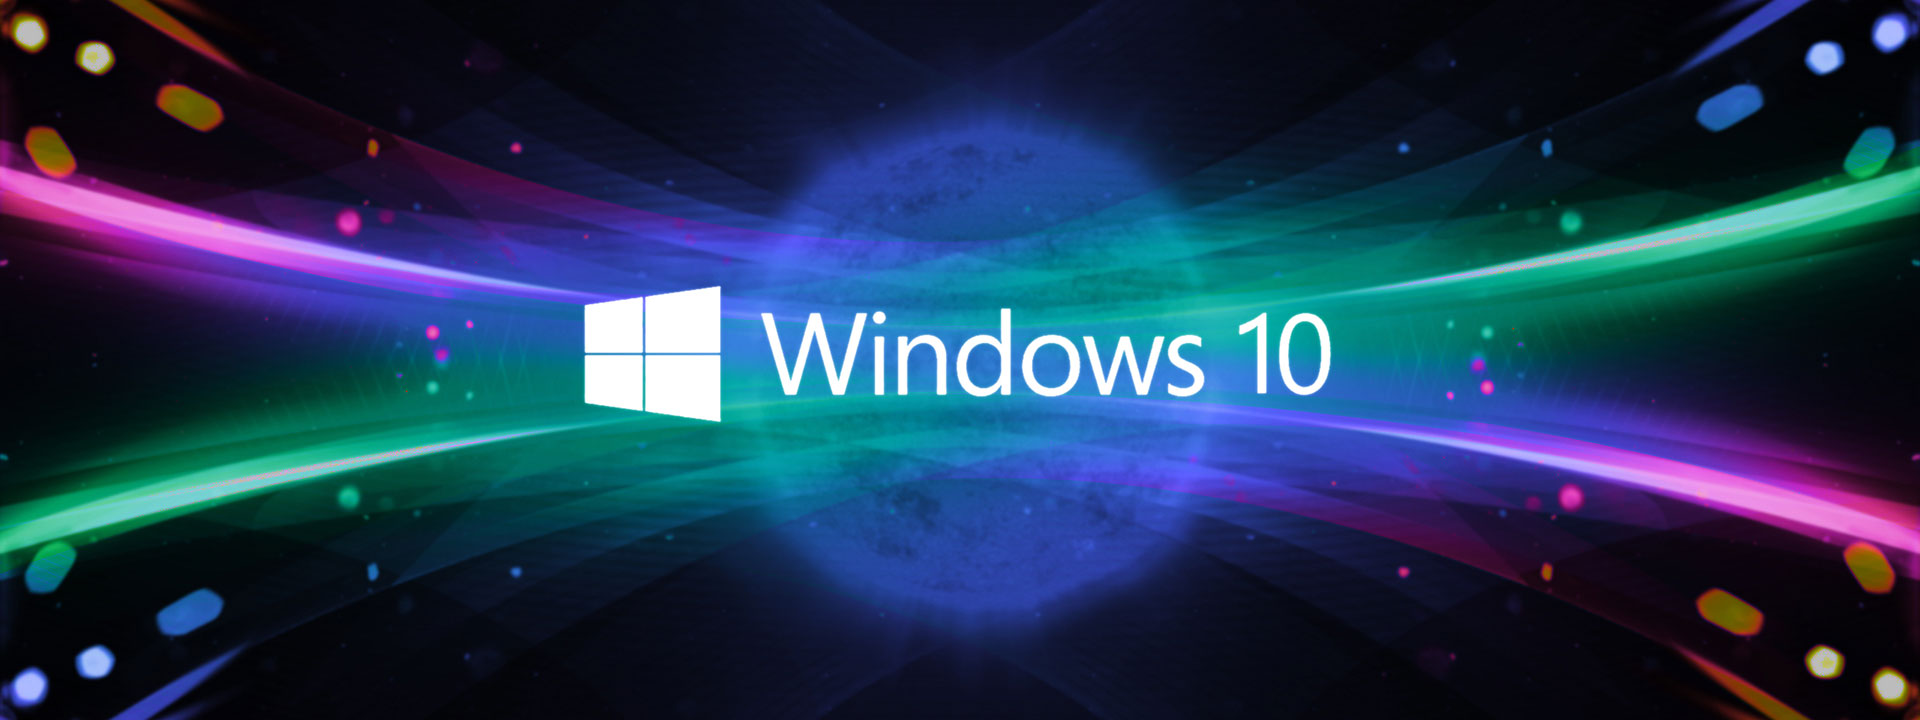 Cập nhật Windows 10 ngày 25 tháng 5 năm 2018: Cập nhật mới nhất của Windows 10 sẽ nâng cao trải nghiệm của người dùng với tính năng tối ưu và sửa lỗi của hệ thống. Hãy theo dõi để biết thêm thông tin về cập nhật này và cải thiện hiệu suất của máy tính của bạn.